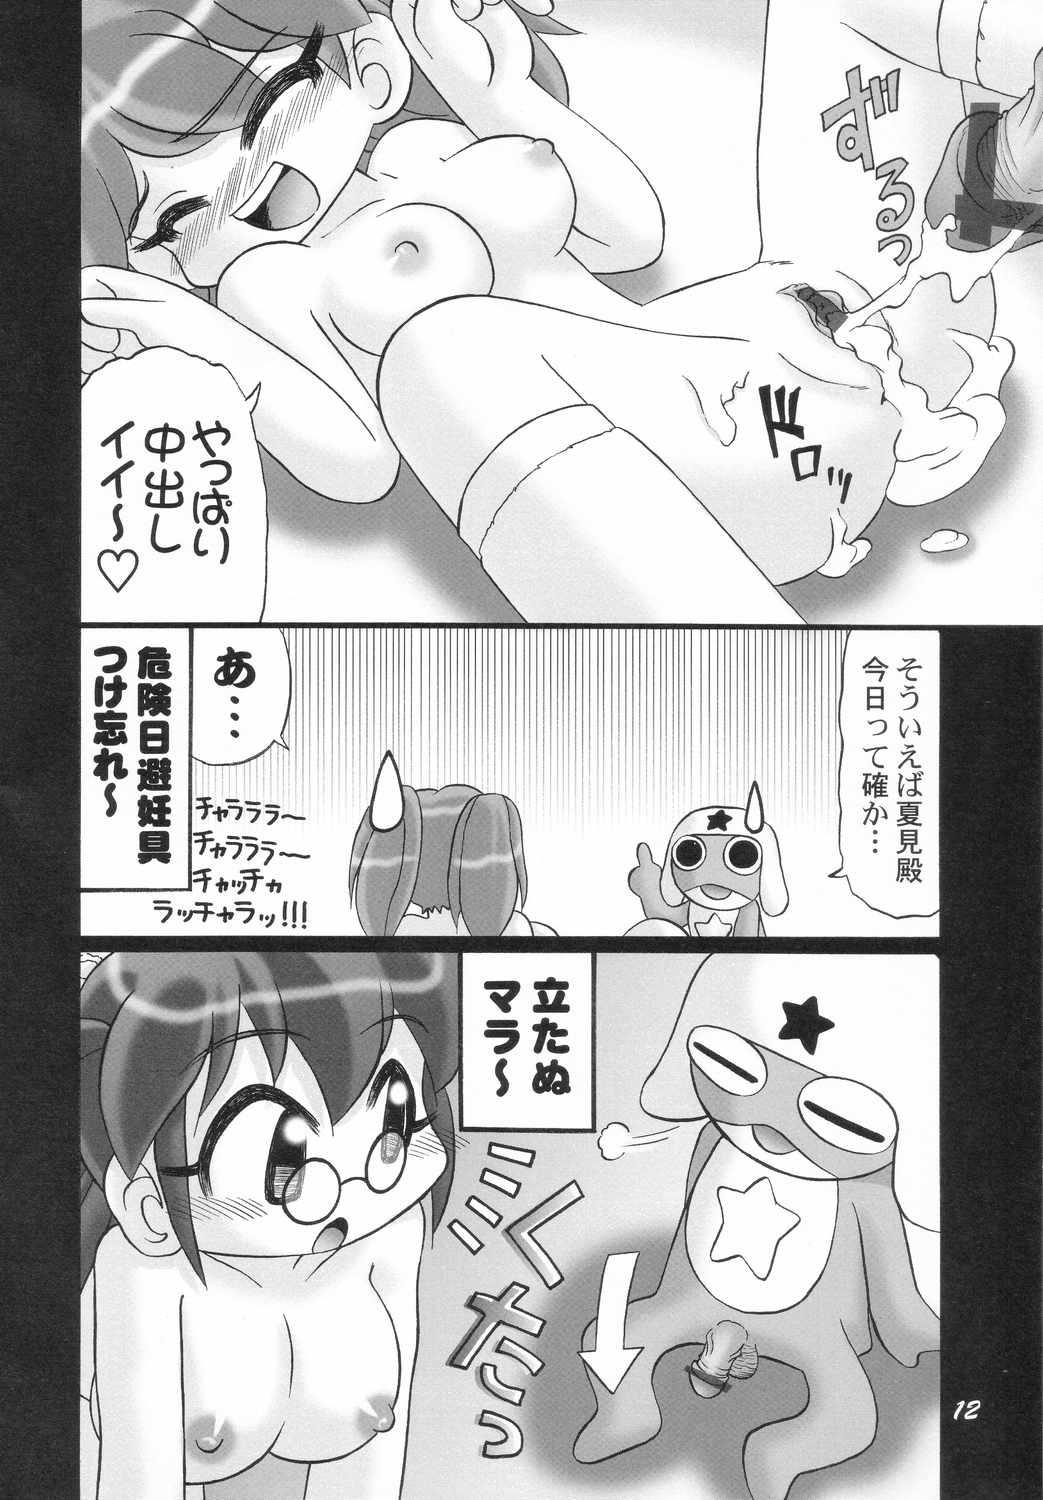 Workout Eroro Gunsou - Keroro gunsou Bokep - Page 11